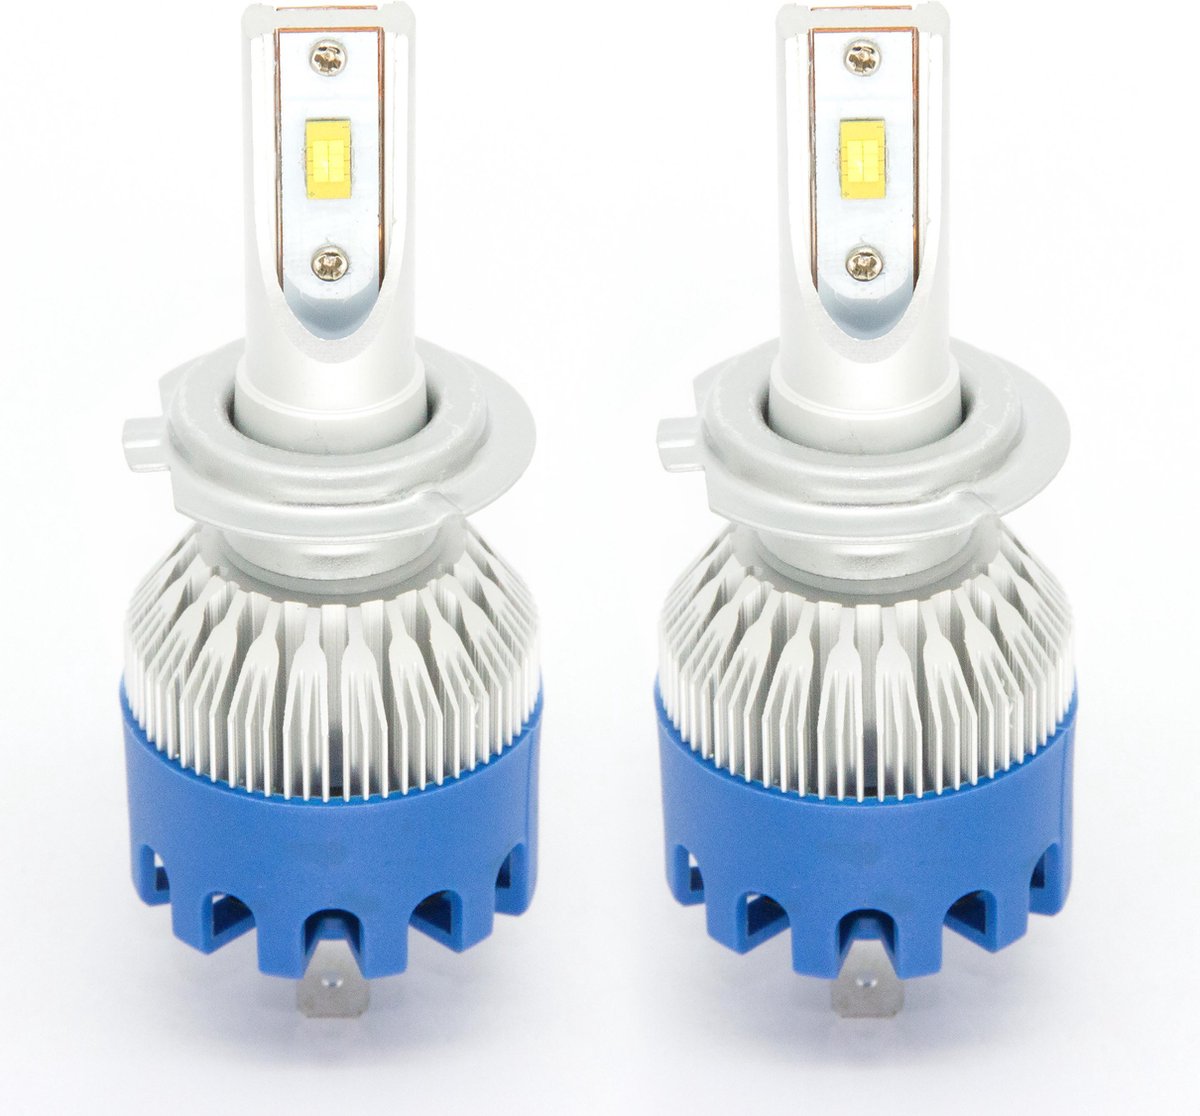 All-in-One Plug-and-Play 60W/6000K H7 LED koplampen (Set van 2 stuks)